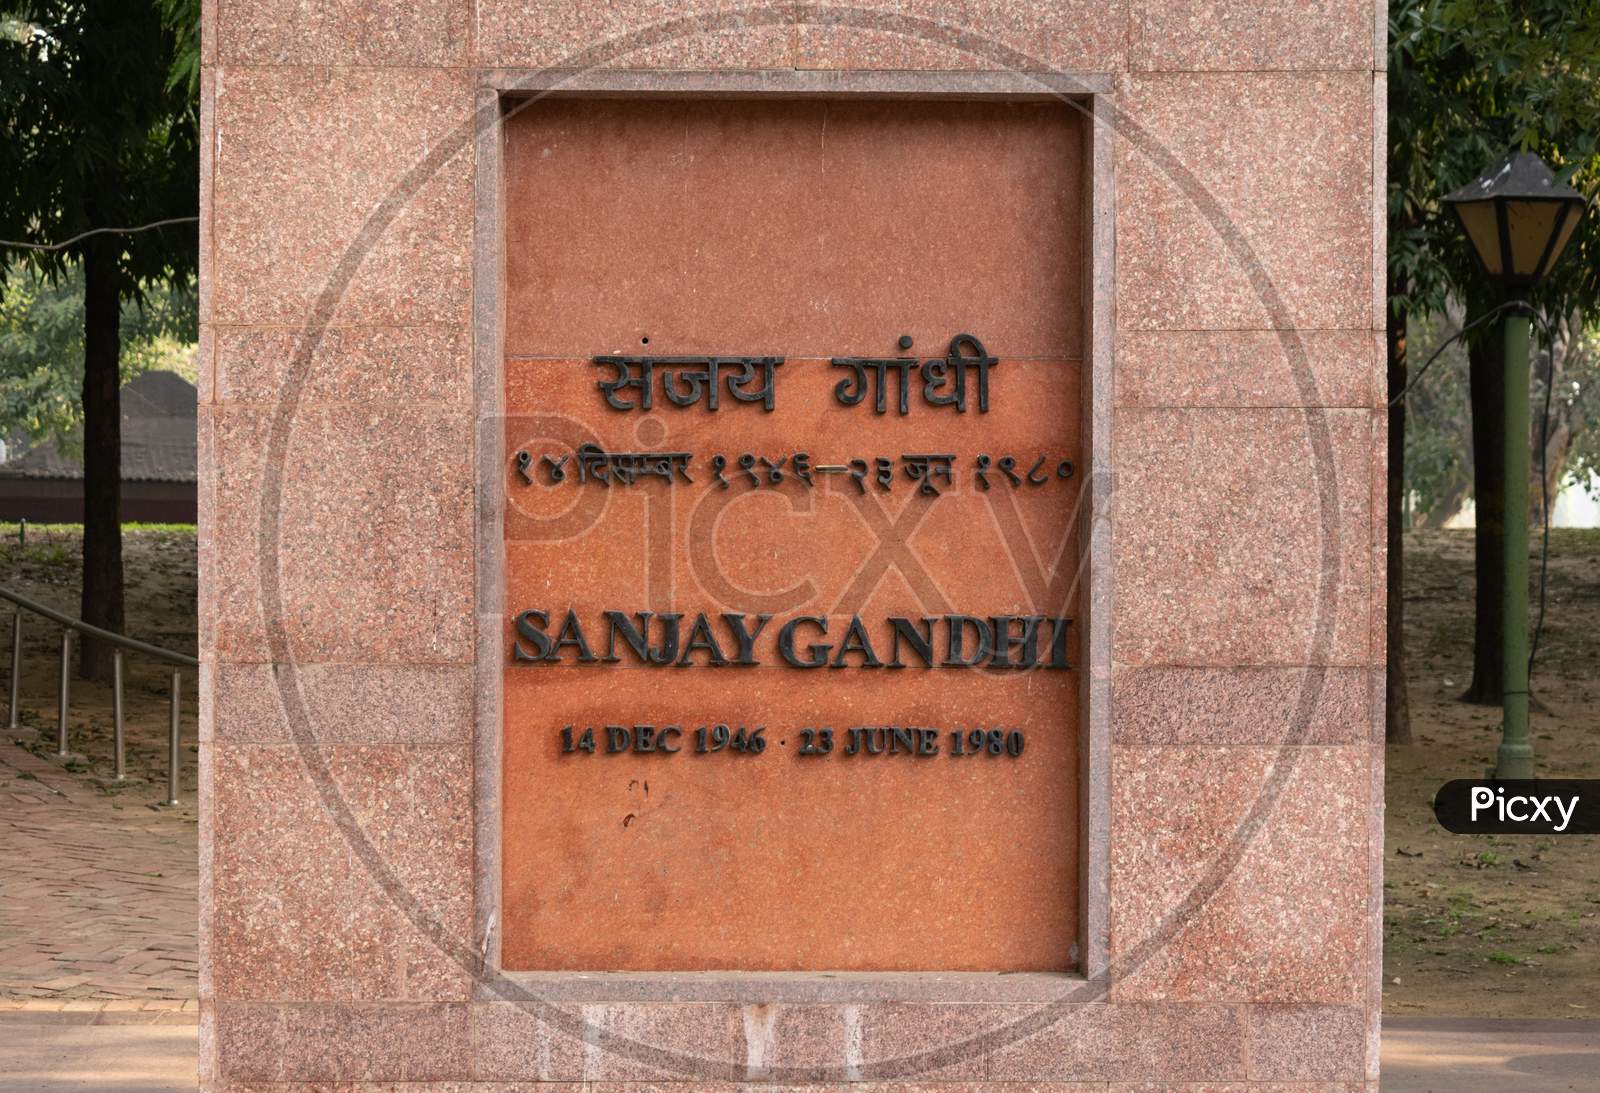 Samadhi of Sanjay Gandhi